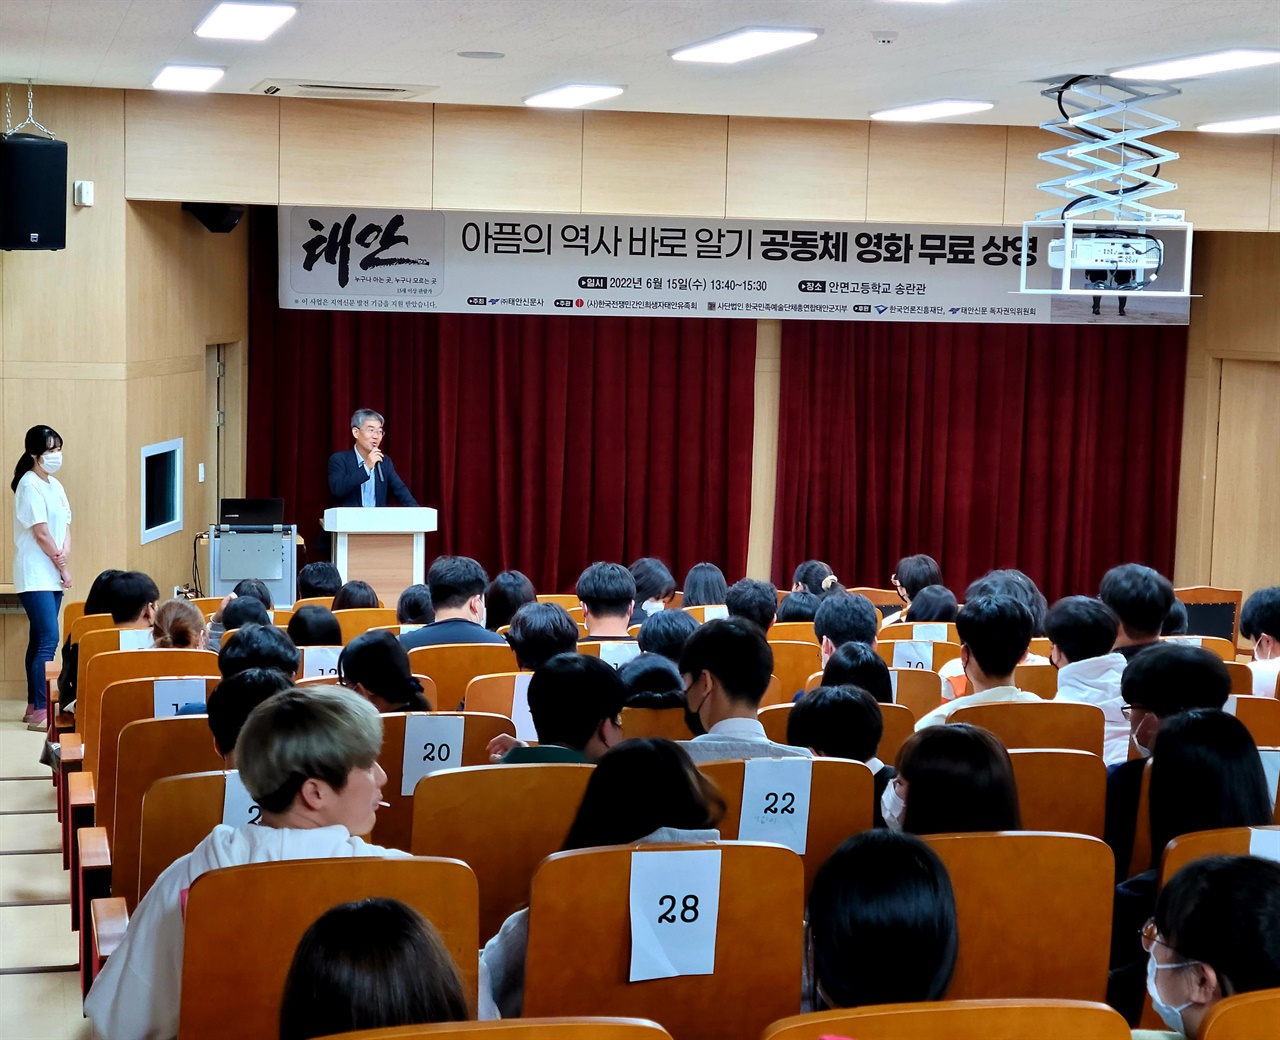 태안유족회 강희권 상임이사가 안면고 학생들에게 공동체 영화 상영에 대해 설명하고 있다.